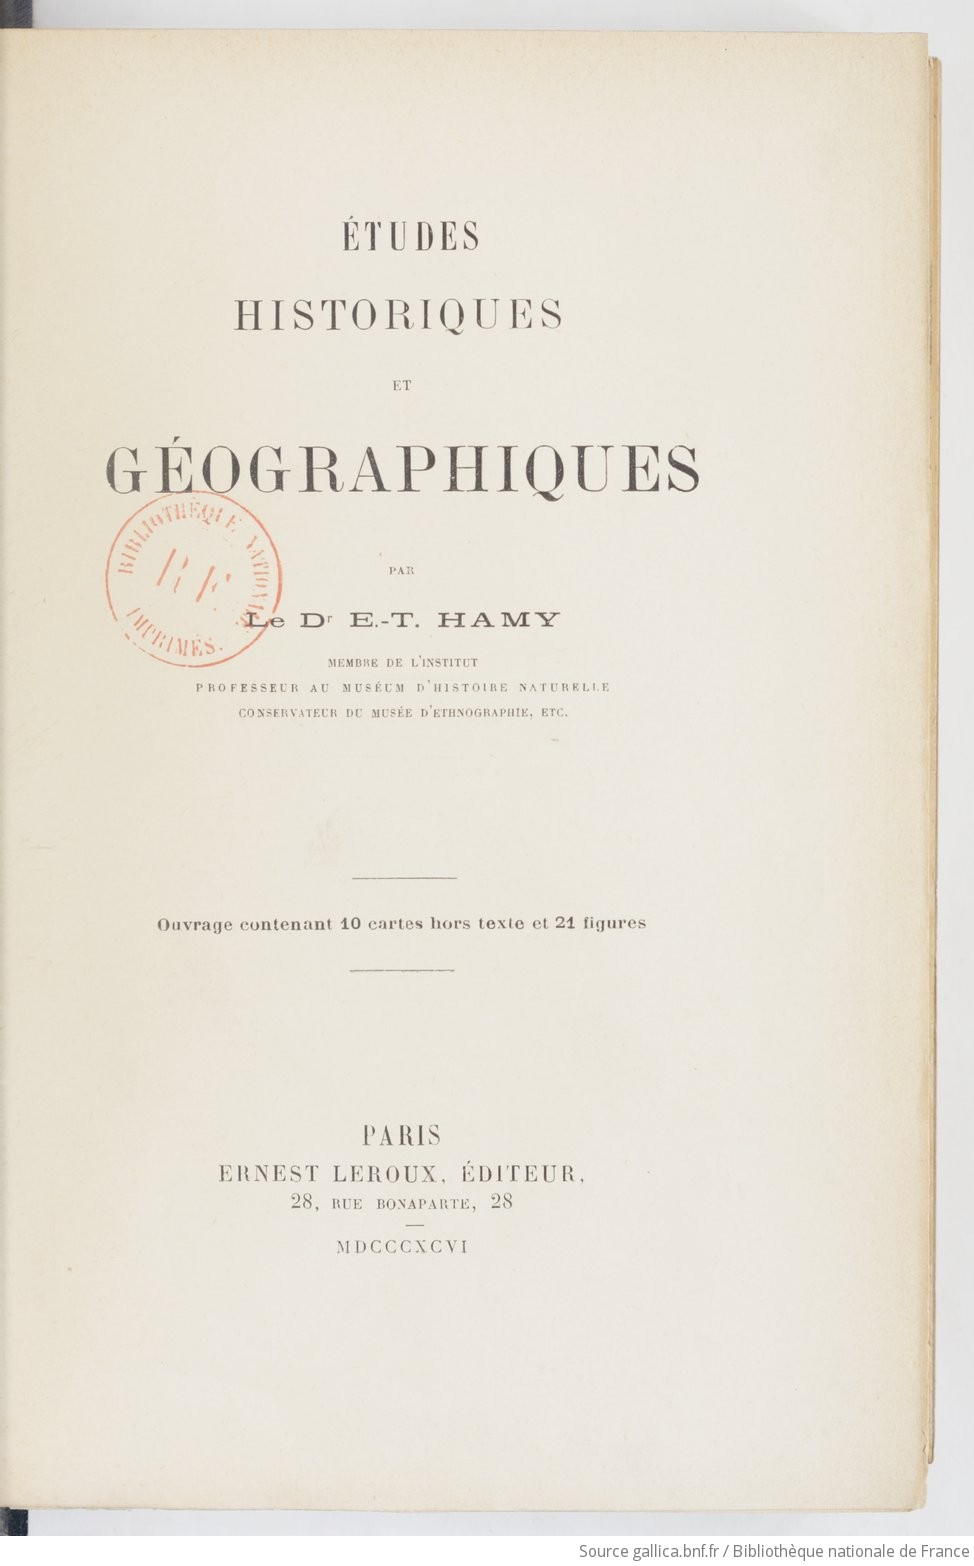 Études historiques et géographiques / par le Dr E.-T. Hamy...